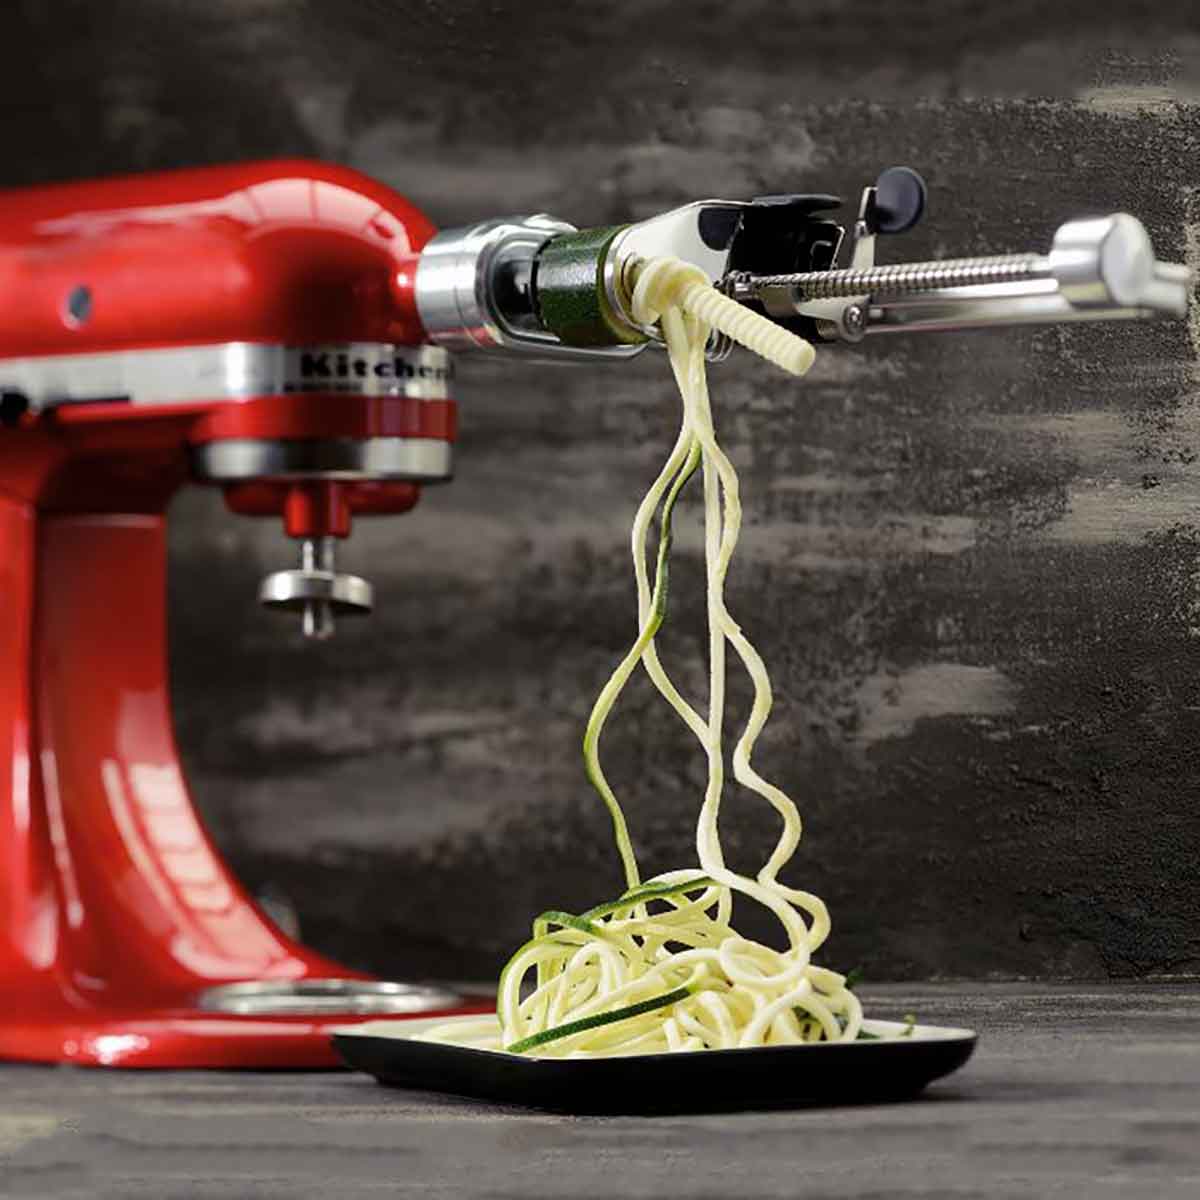 KitchenAid robot da cucina